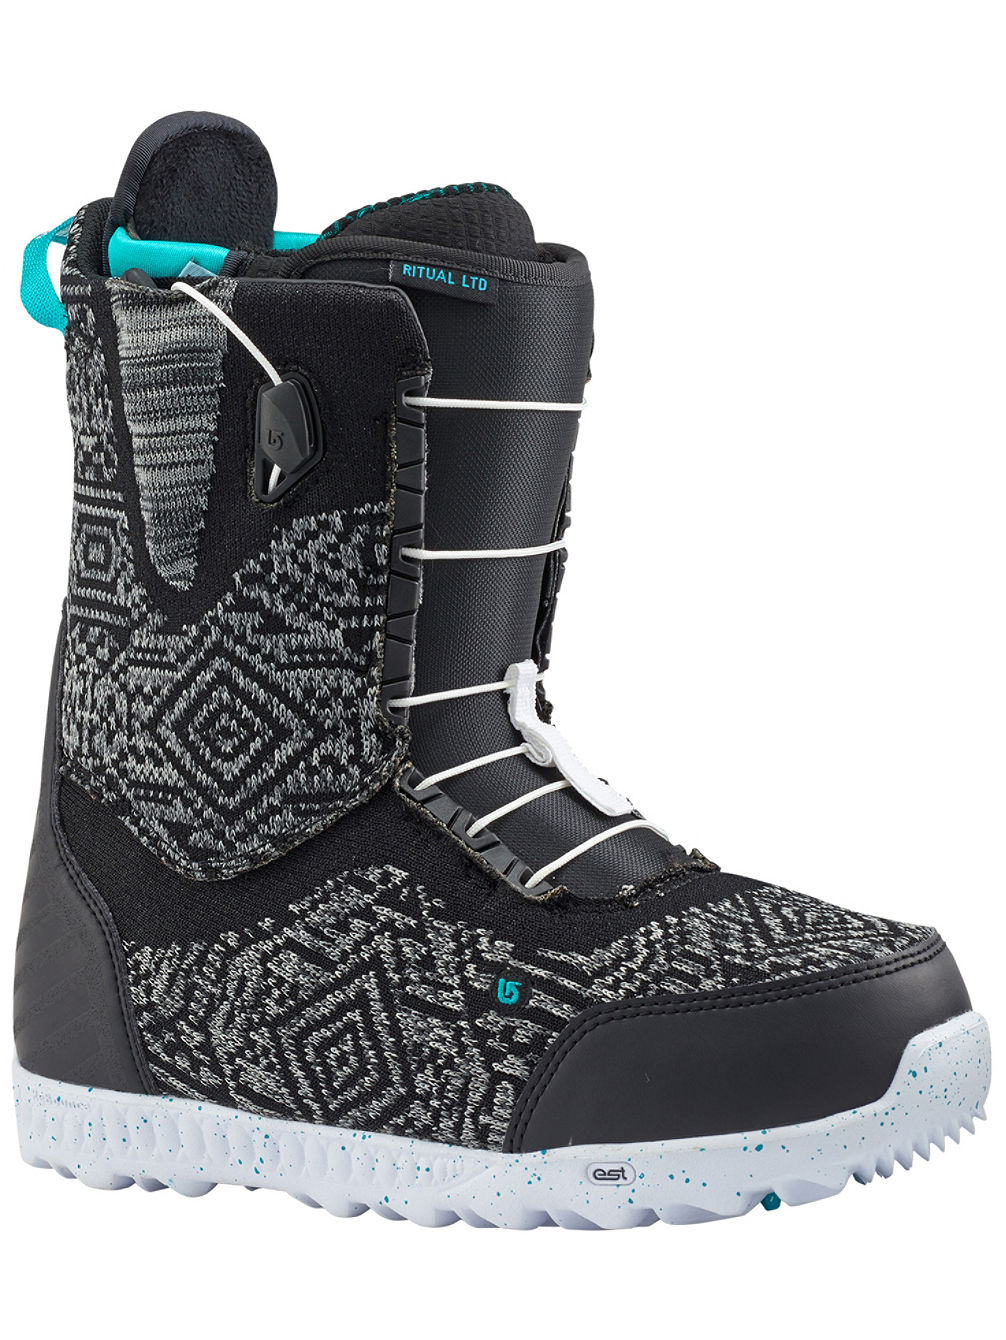 Ritual Ltd 2018 Boots de snowboard